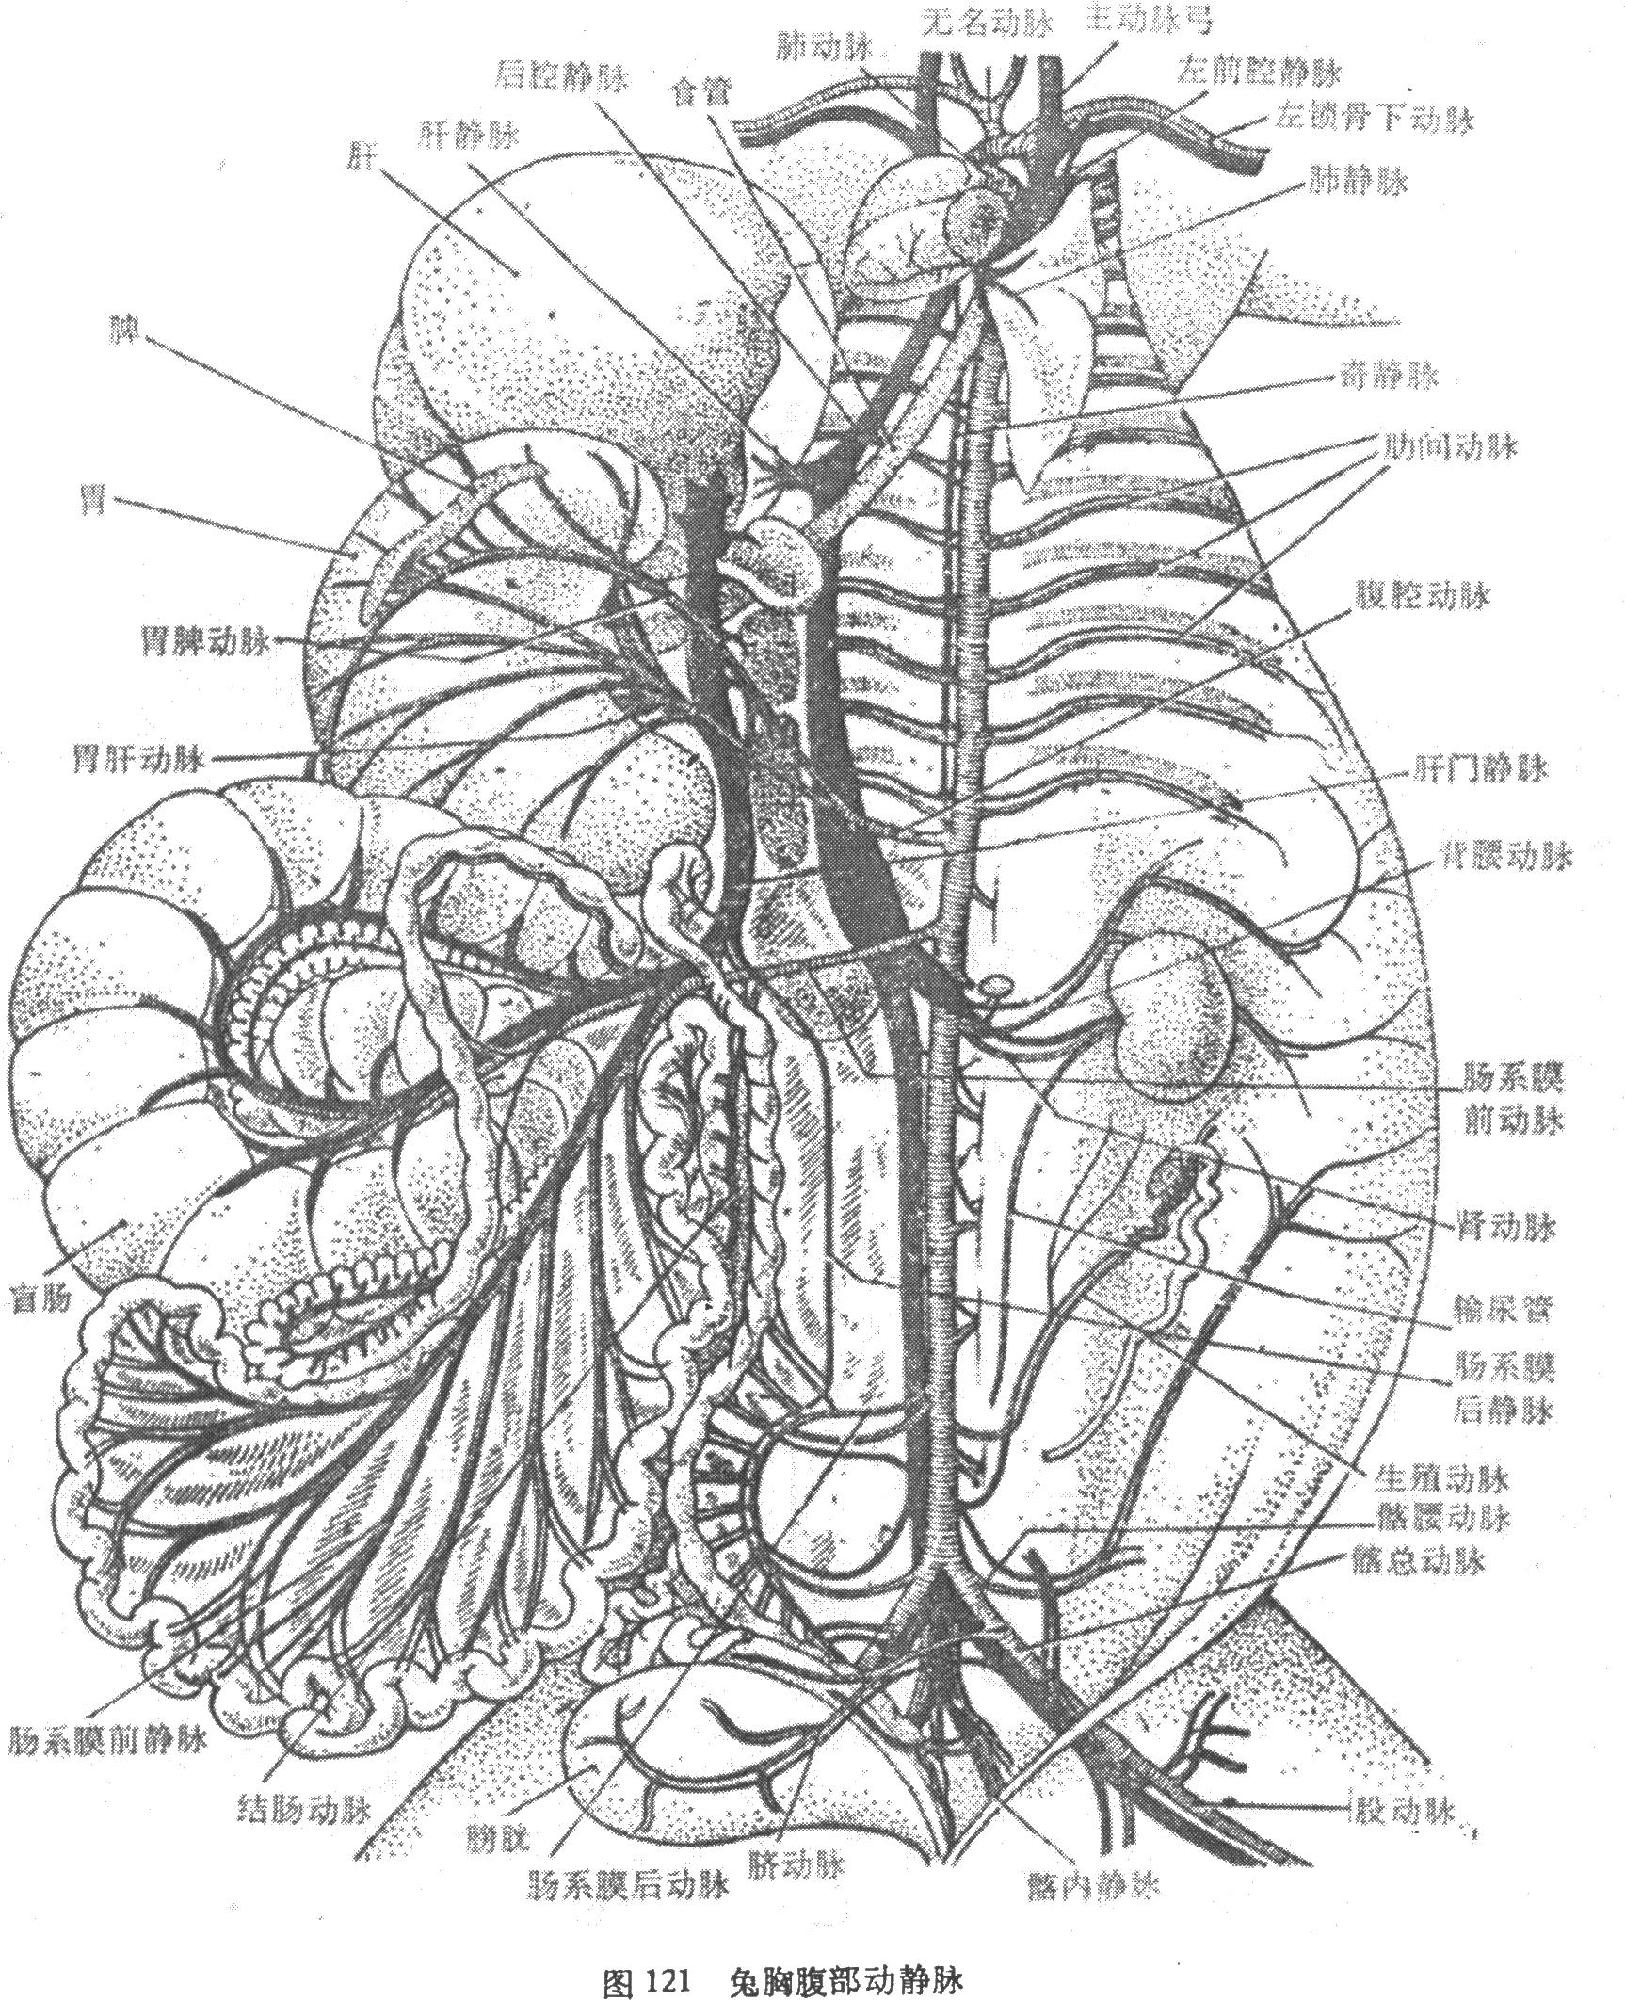 冠状静脉窦位置图片图片